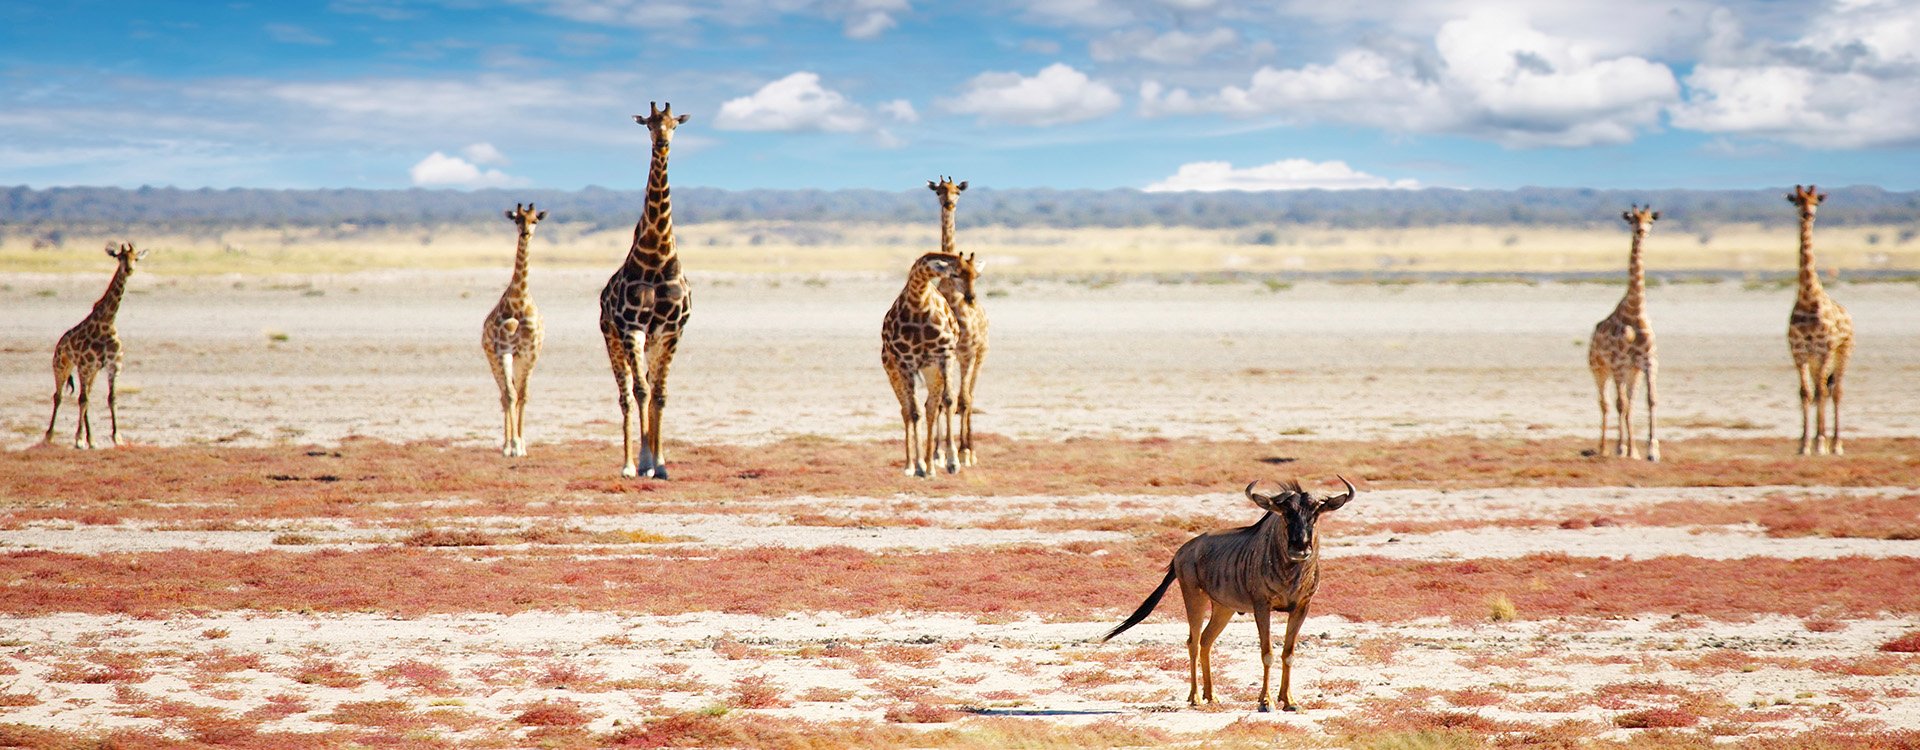 Namibia_Etosha_wildbeest and giraffe_iStock_000031055106